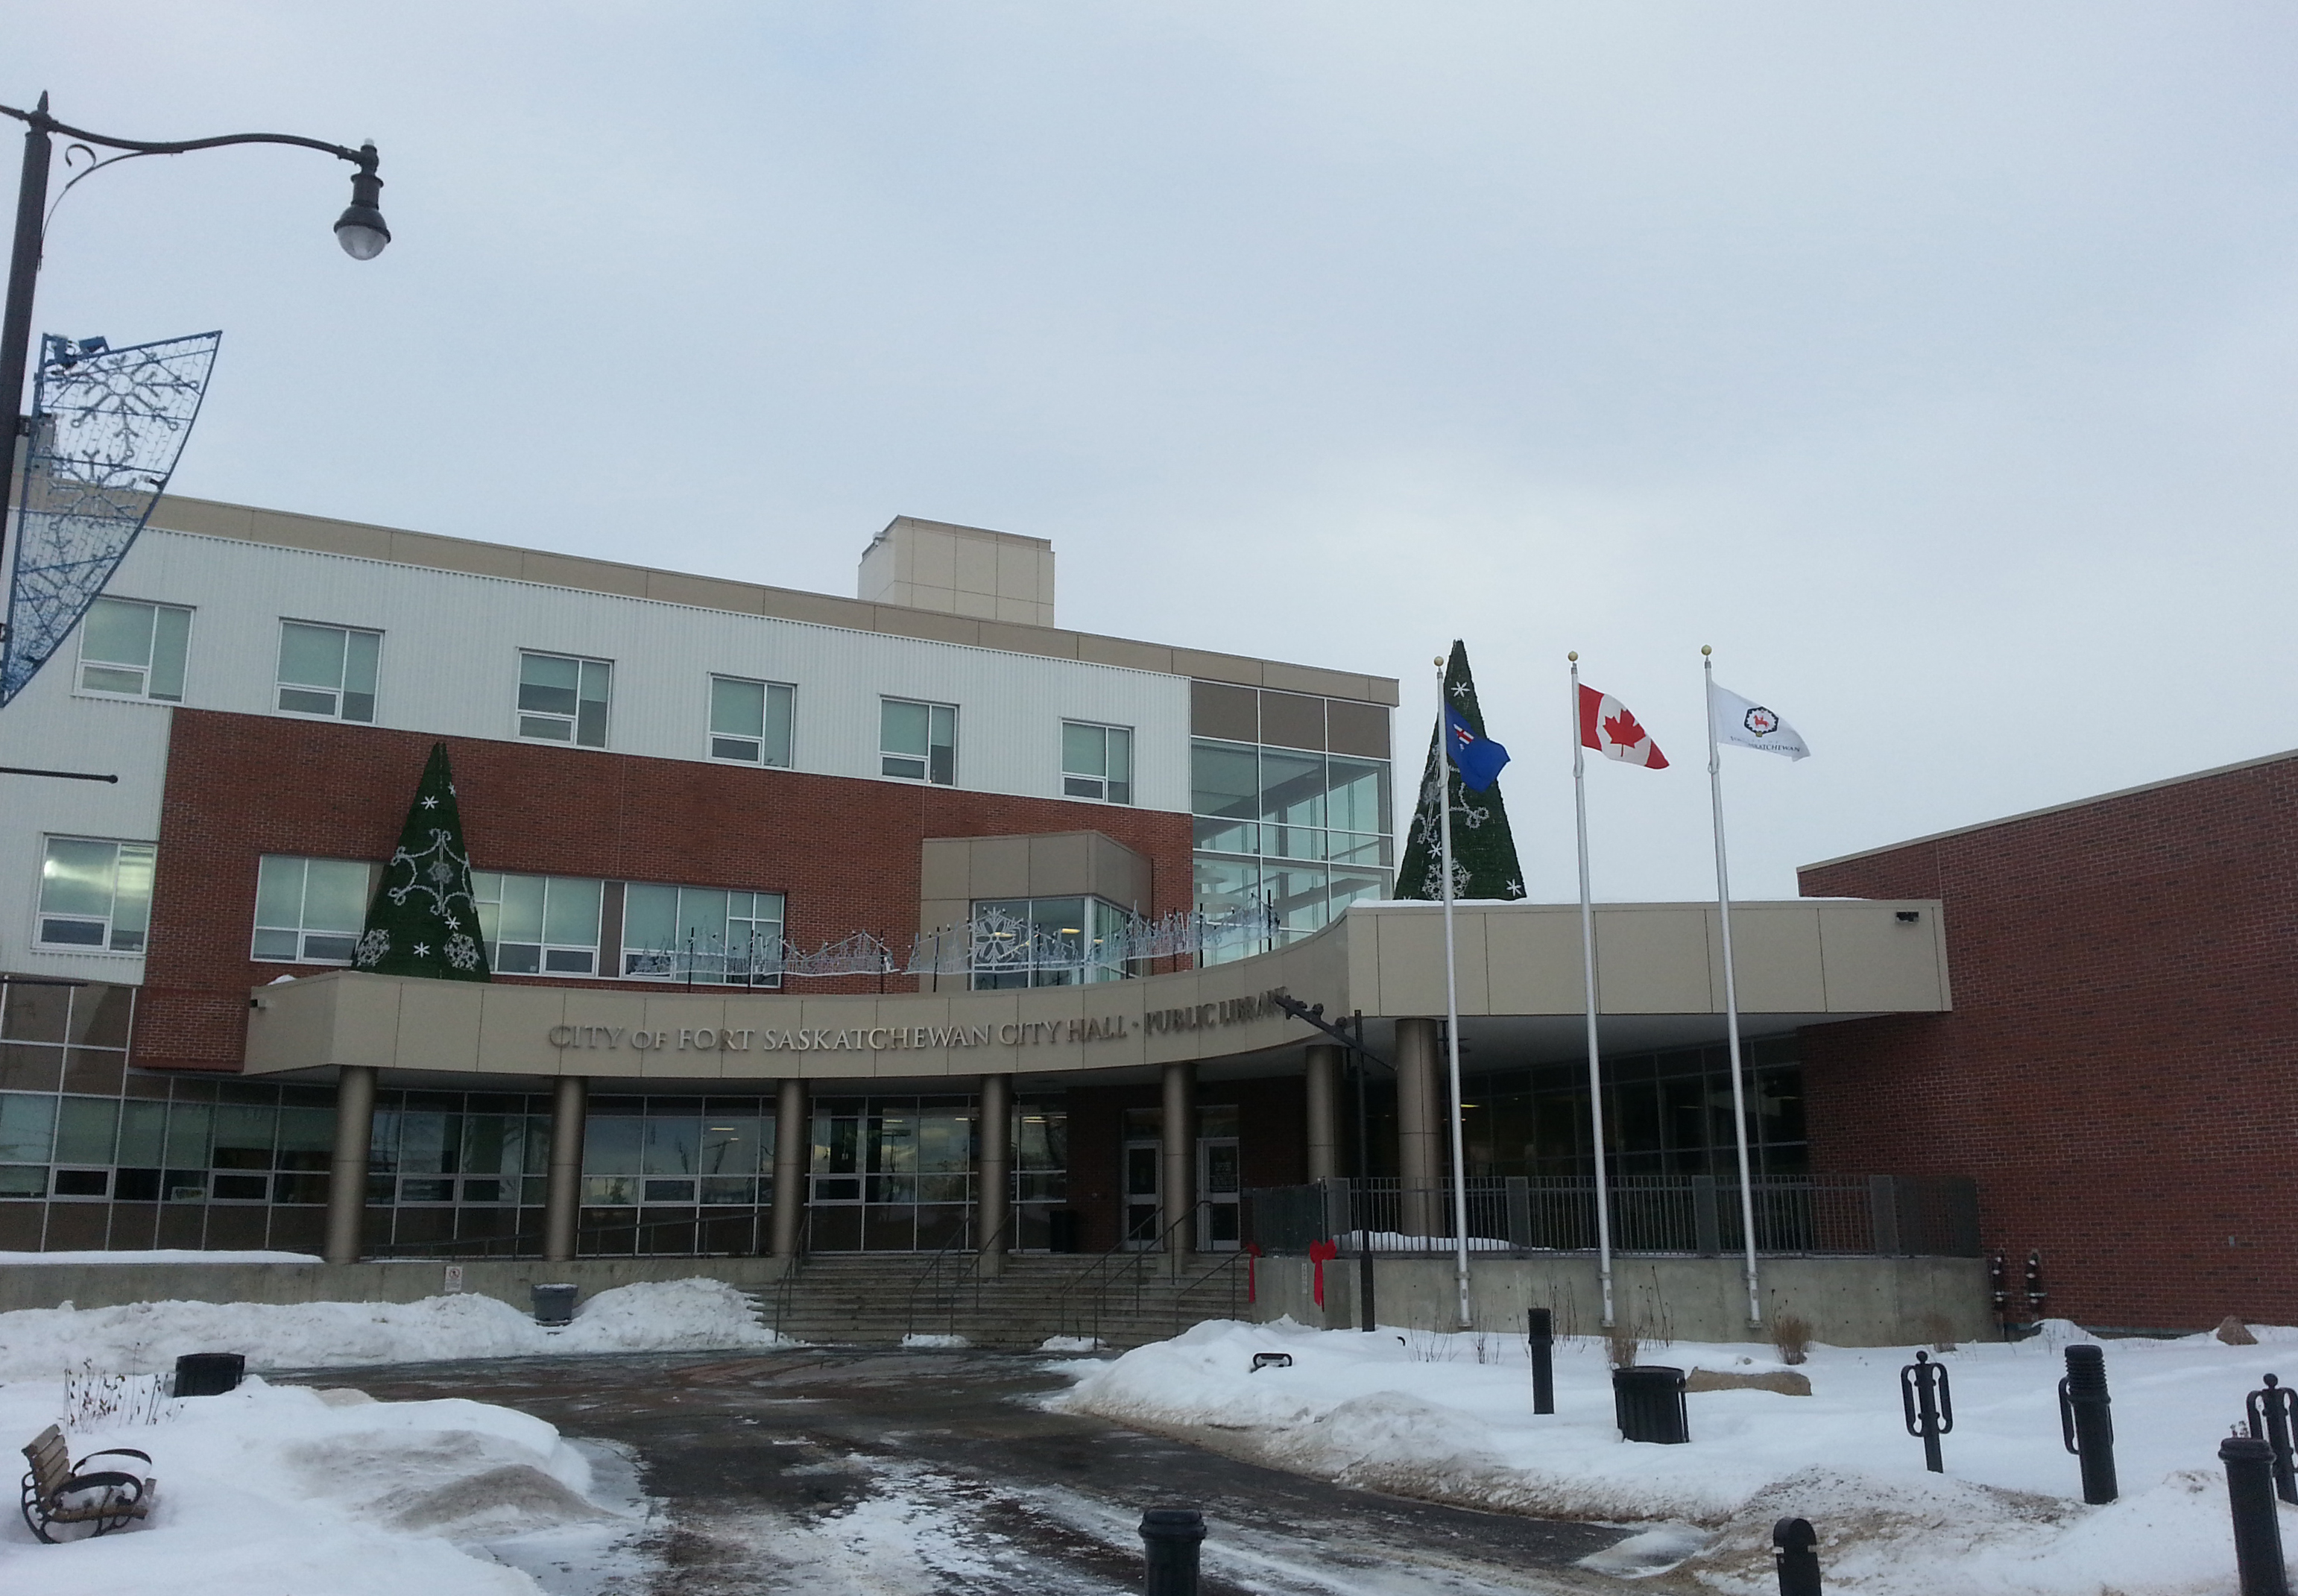 Fort Saskatchewan city hall 2013